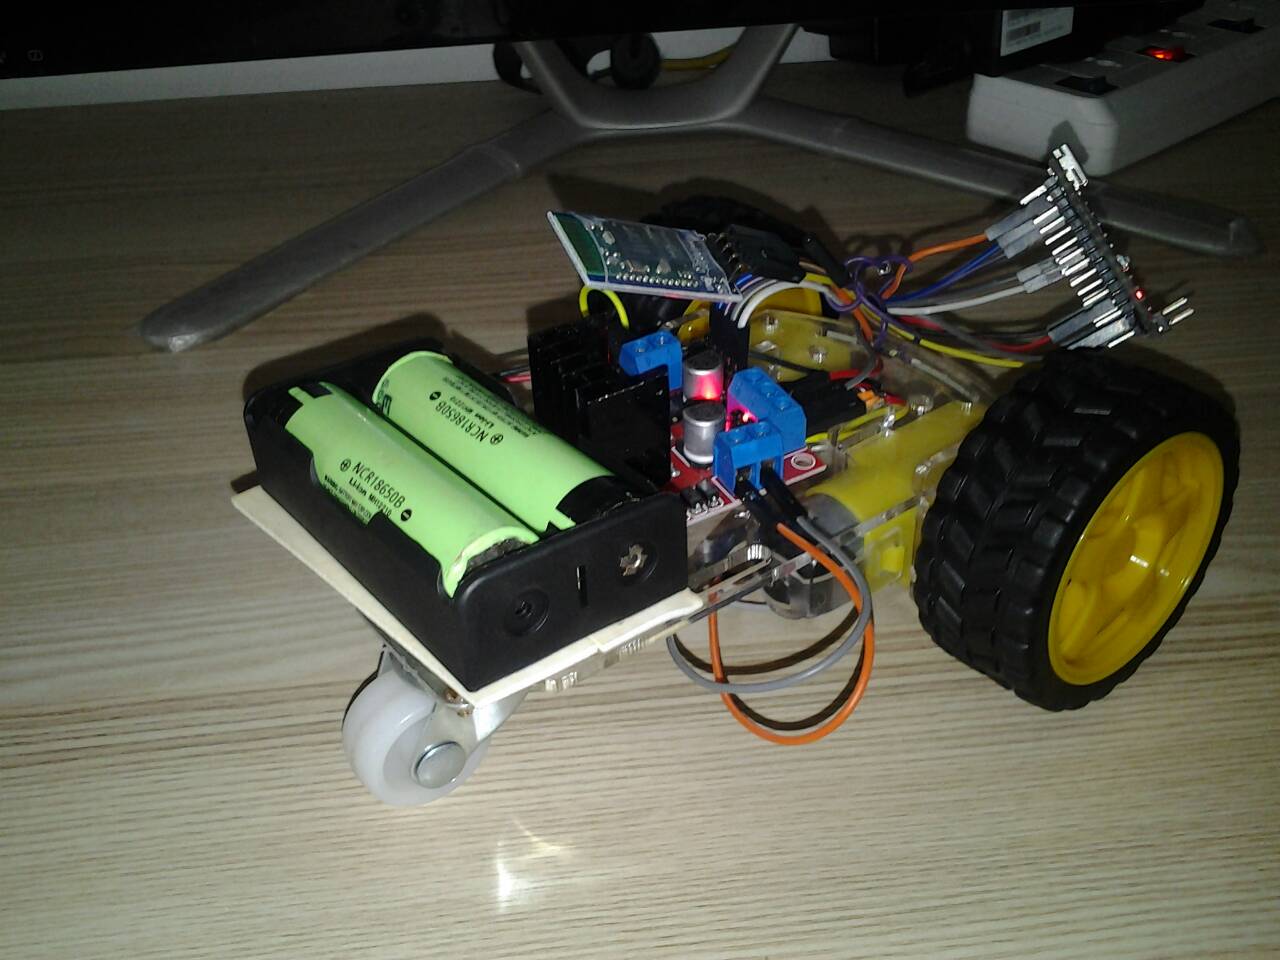 โปรเจครถบังคับ Arduino Nano 3.0 ควบคุมด้วย บลูทูธ Hc-06 - โรบอทสยาม  อุปกรณ์หุ่นยนต์ Arduino : Inspired By Lnwshop.Com